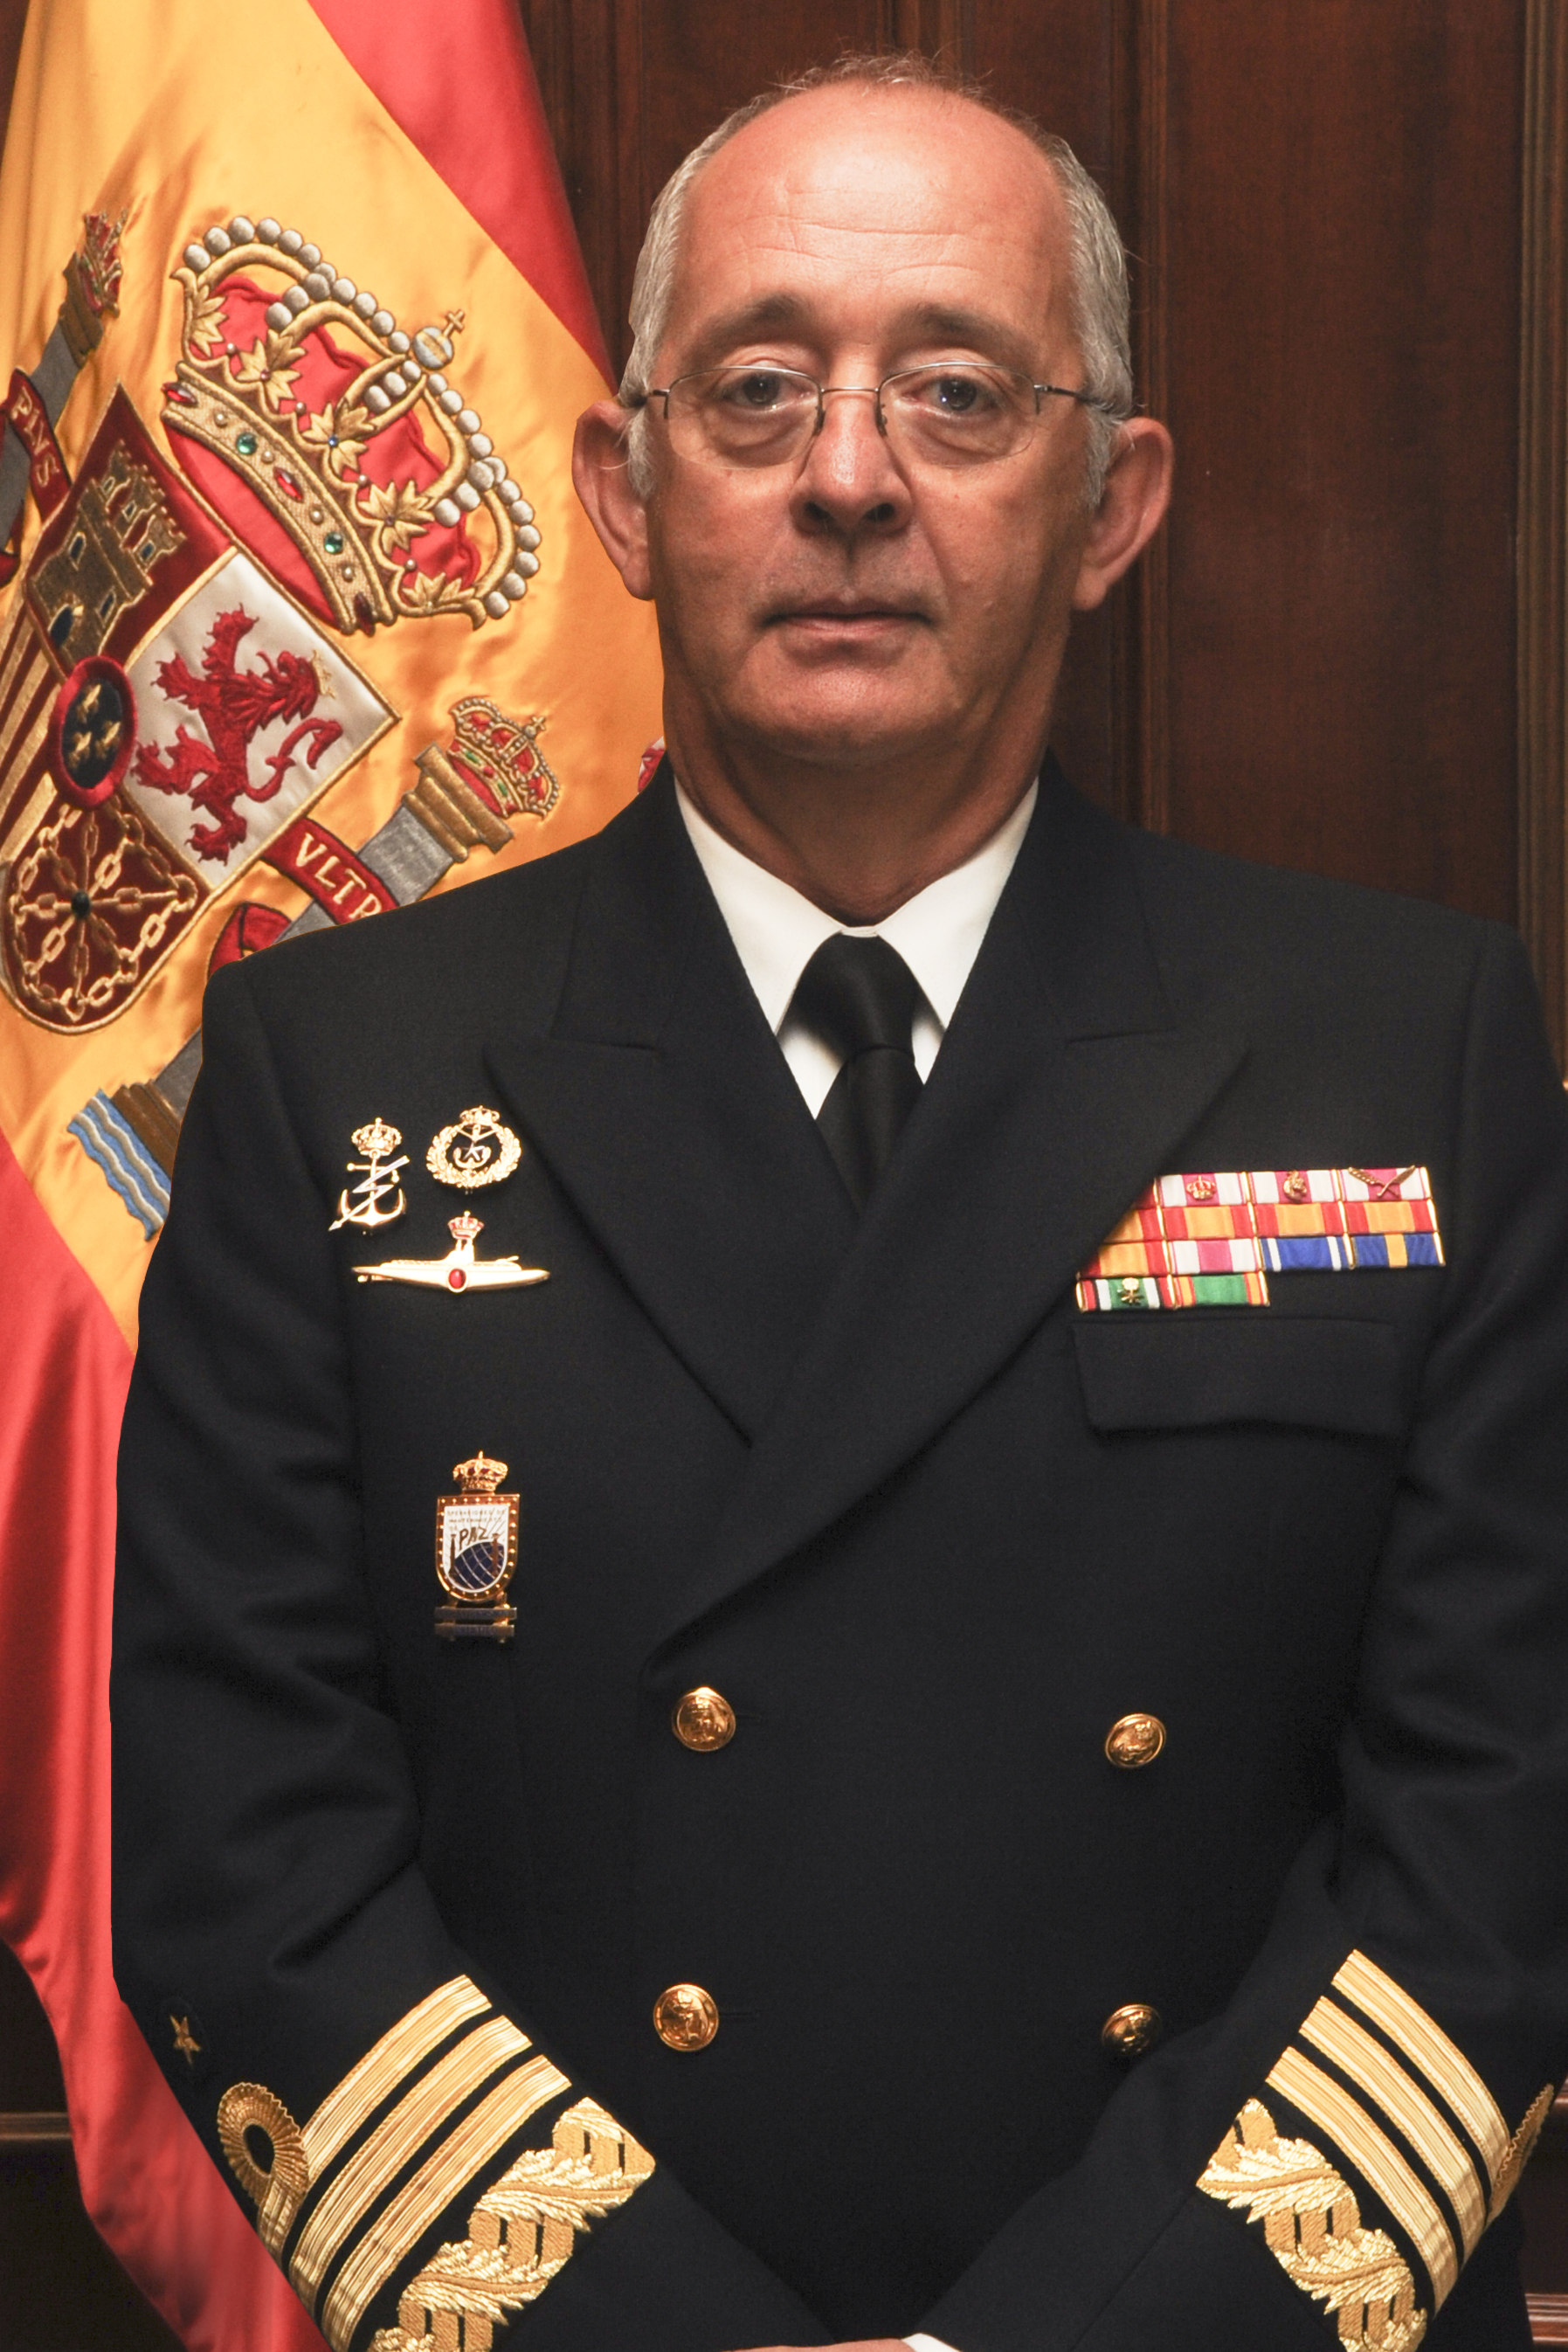 Almirante General D. Jaime Muñoz-Delgado y Díaz del Río